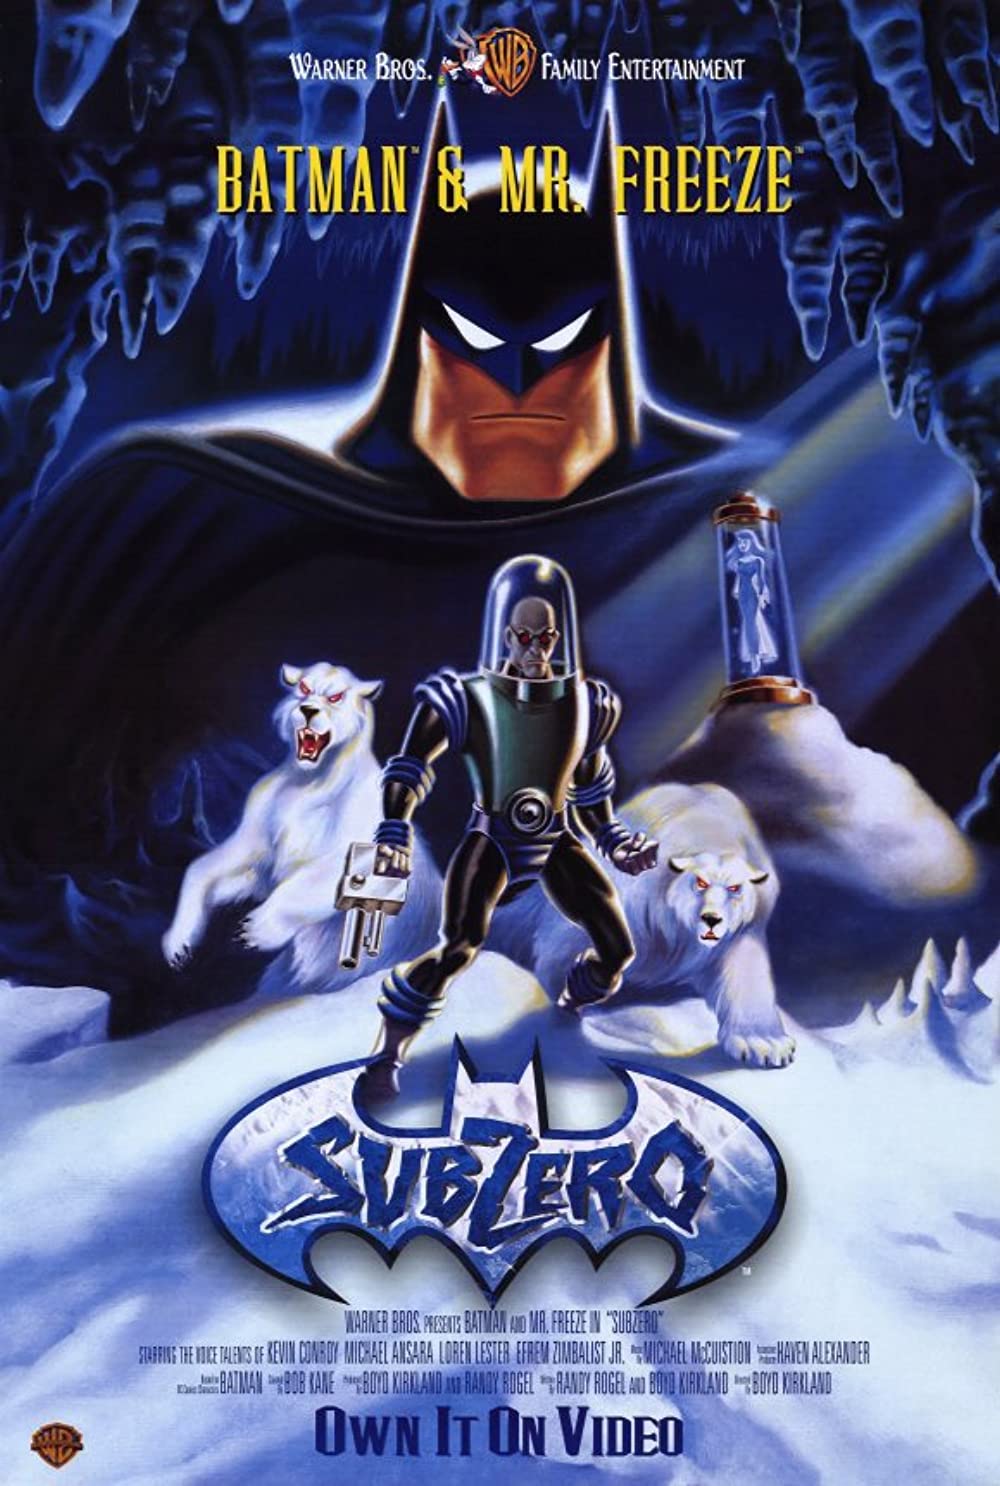 ดูหนังออนไลน์ฟรี Batman & Mr. Freeze SubZero (1998) แบทแมน & มิสเตอร์ เฟรส ซับซีโร่ หนังเต็มเรื่อง หนังมาสเตอร์ ดูหนังHD ดูหนังออนไลน์ ดูหนังใหม่